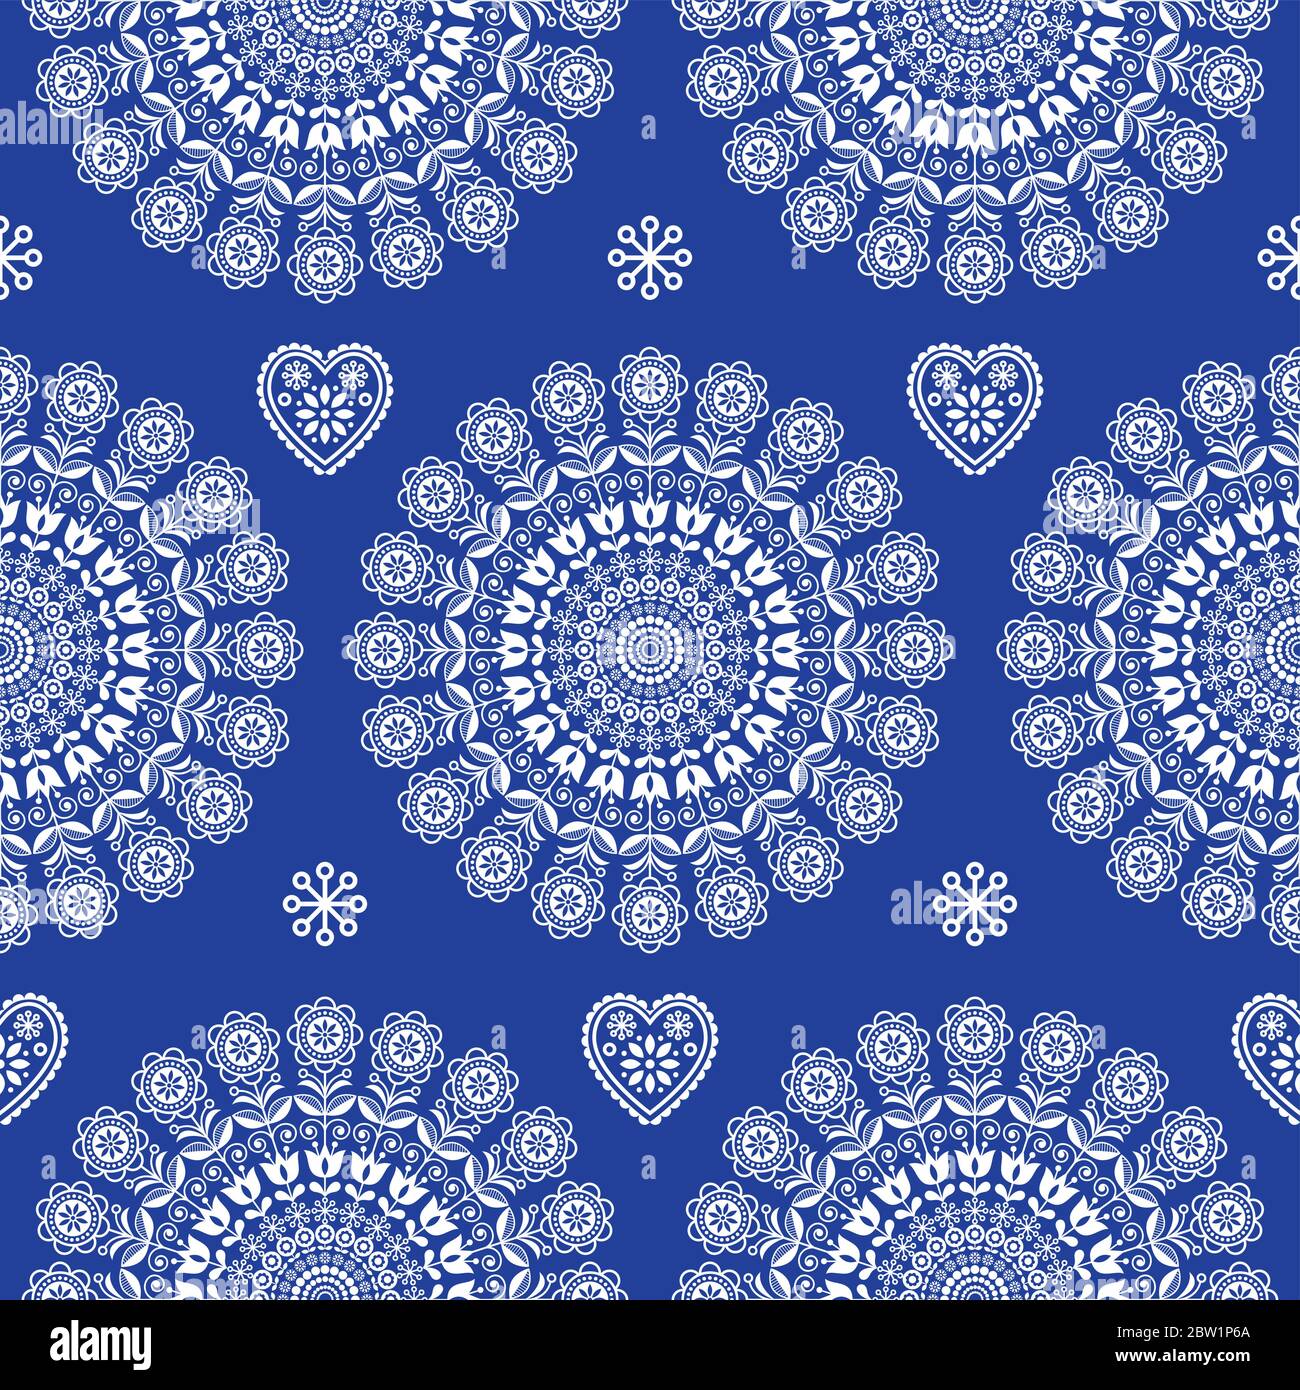 Nahtlose skandinavische Volkskunst Vektor Mandala mit Blumen, florale repetitve Ornament, nordisches Design in weiß auf navy blau Stock Vektor